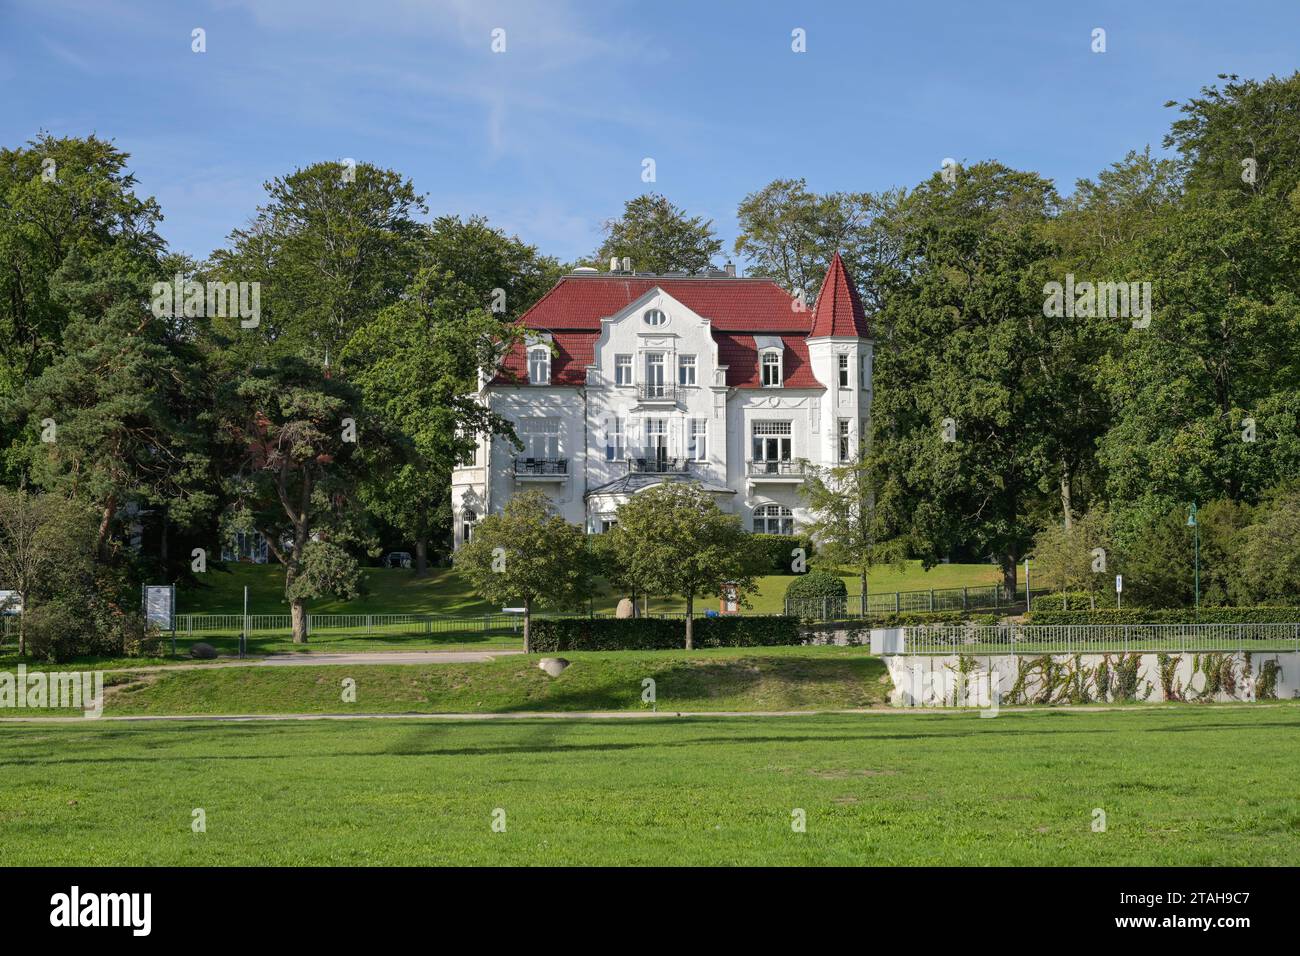 Villa Staudt, Delbrückstraße, Heringsdorf, Usedom, Mecklenburg-Vorpommern, Deutschland Banque D'Images